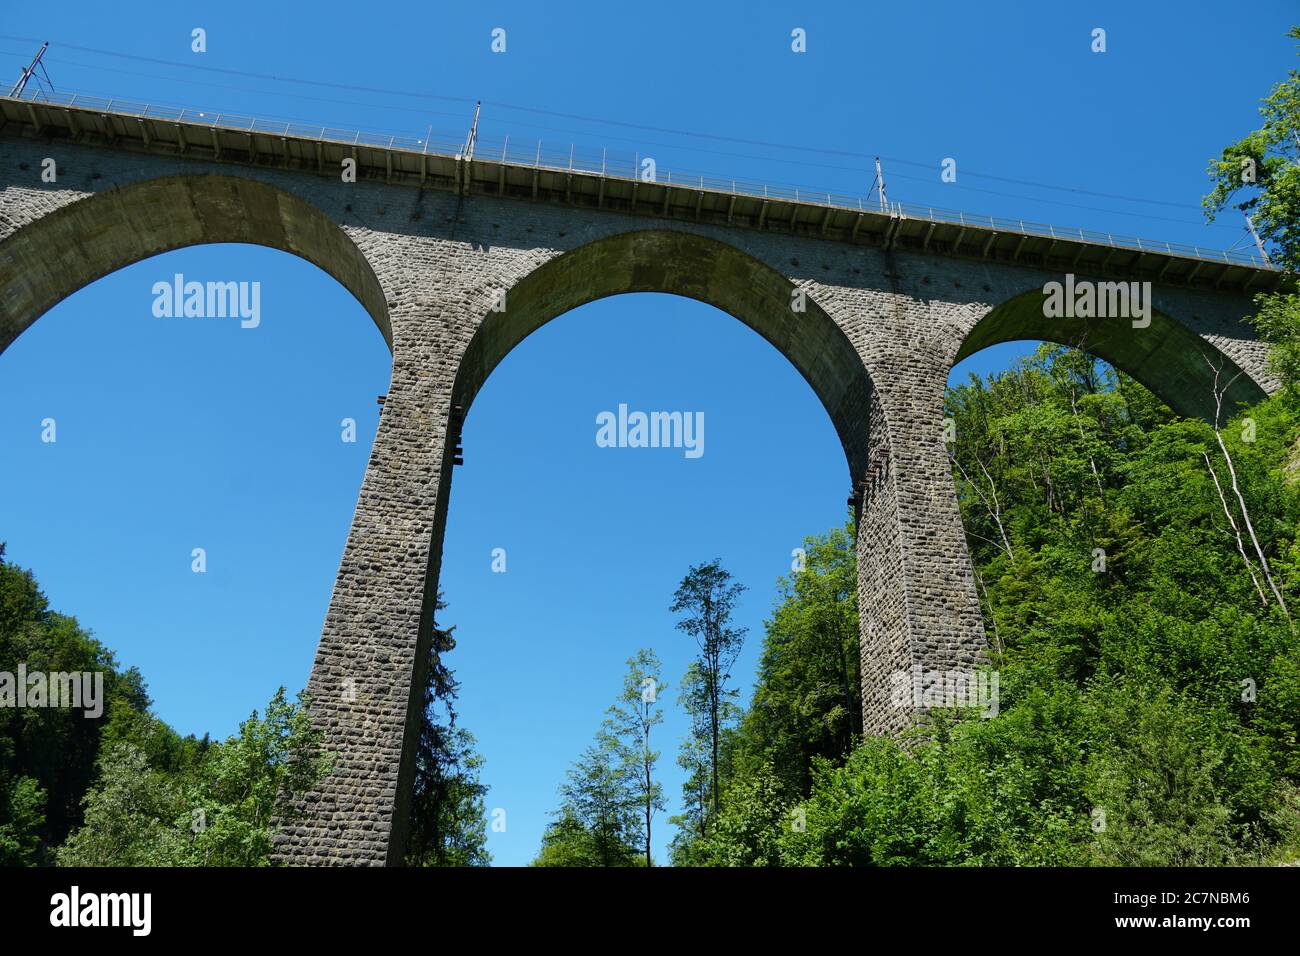 Sitterviaduct SOB, un ponte ferroviario in vista frontale e in prospettiva verso l'alto. Appartiene al ponte di San Gallo Sentiero escursionistico nella Svizzera orientale. Foto Stock